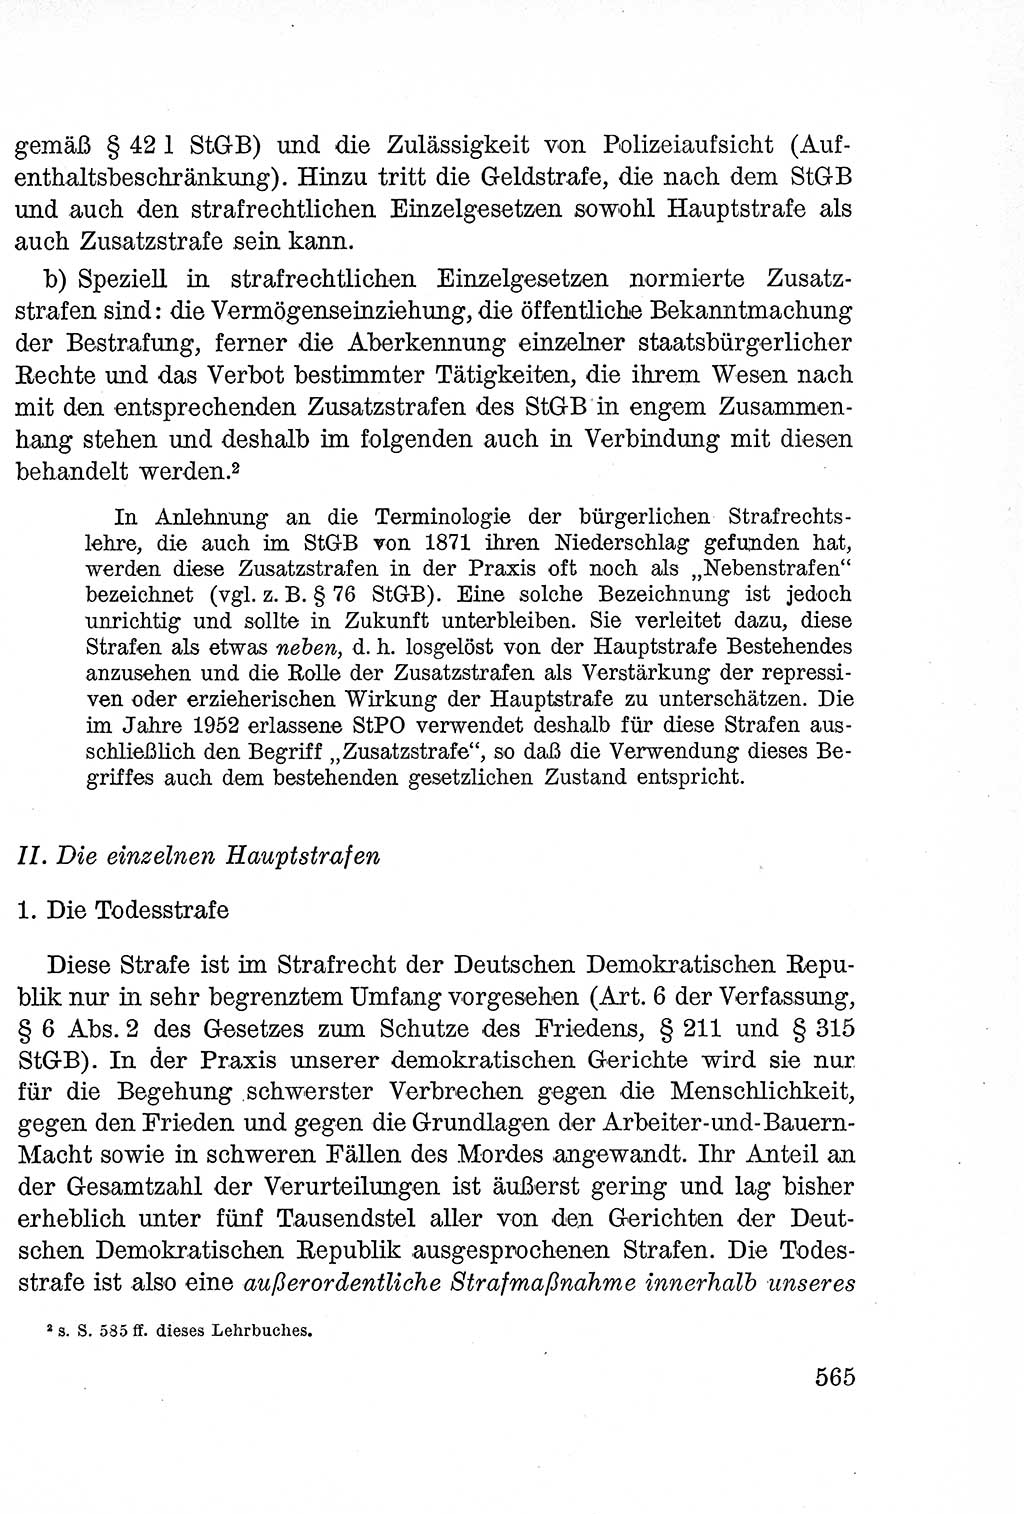 Lehrbuch des Strafrechts der Deutschen Demokratischen Republik (DDR), Allgemeiner Teil 1957, Seite 565 (Lb. Strafr. DDR AT 1957, S. 565)